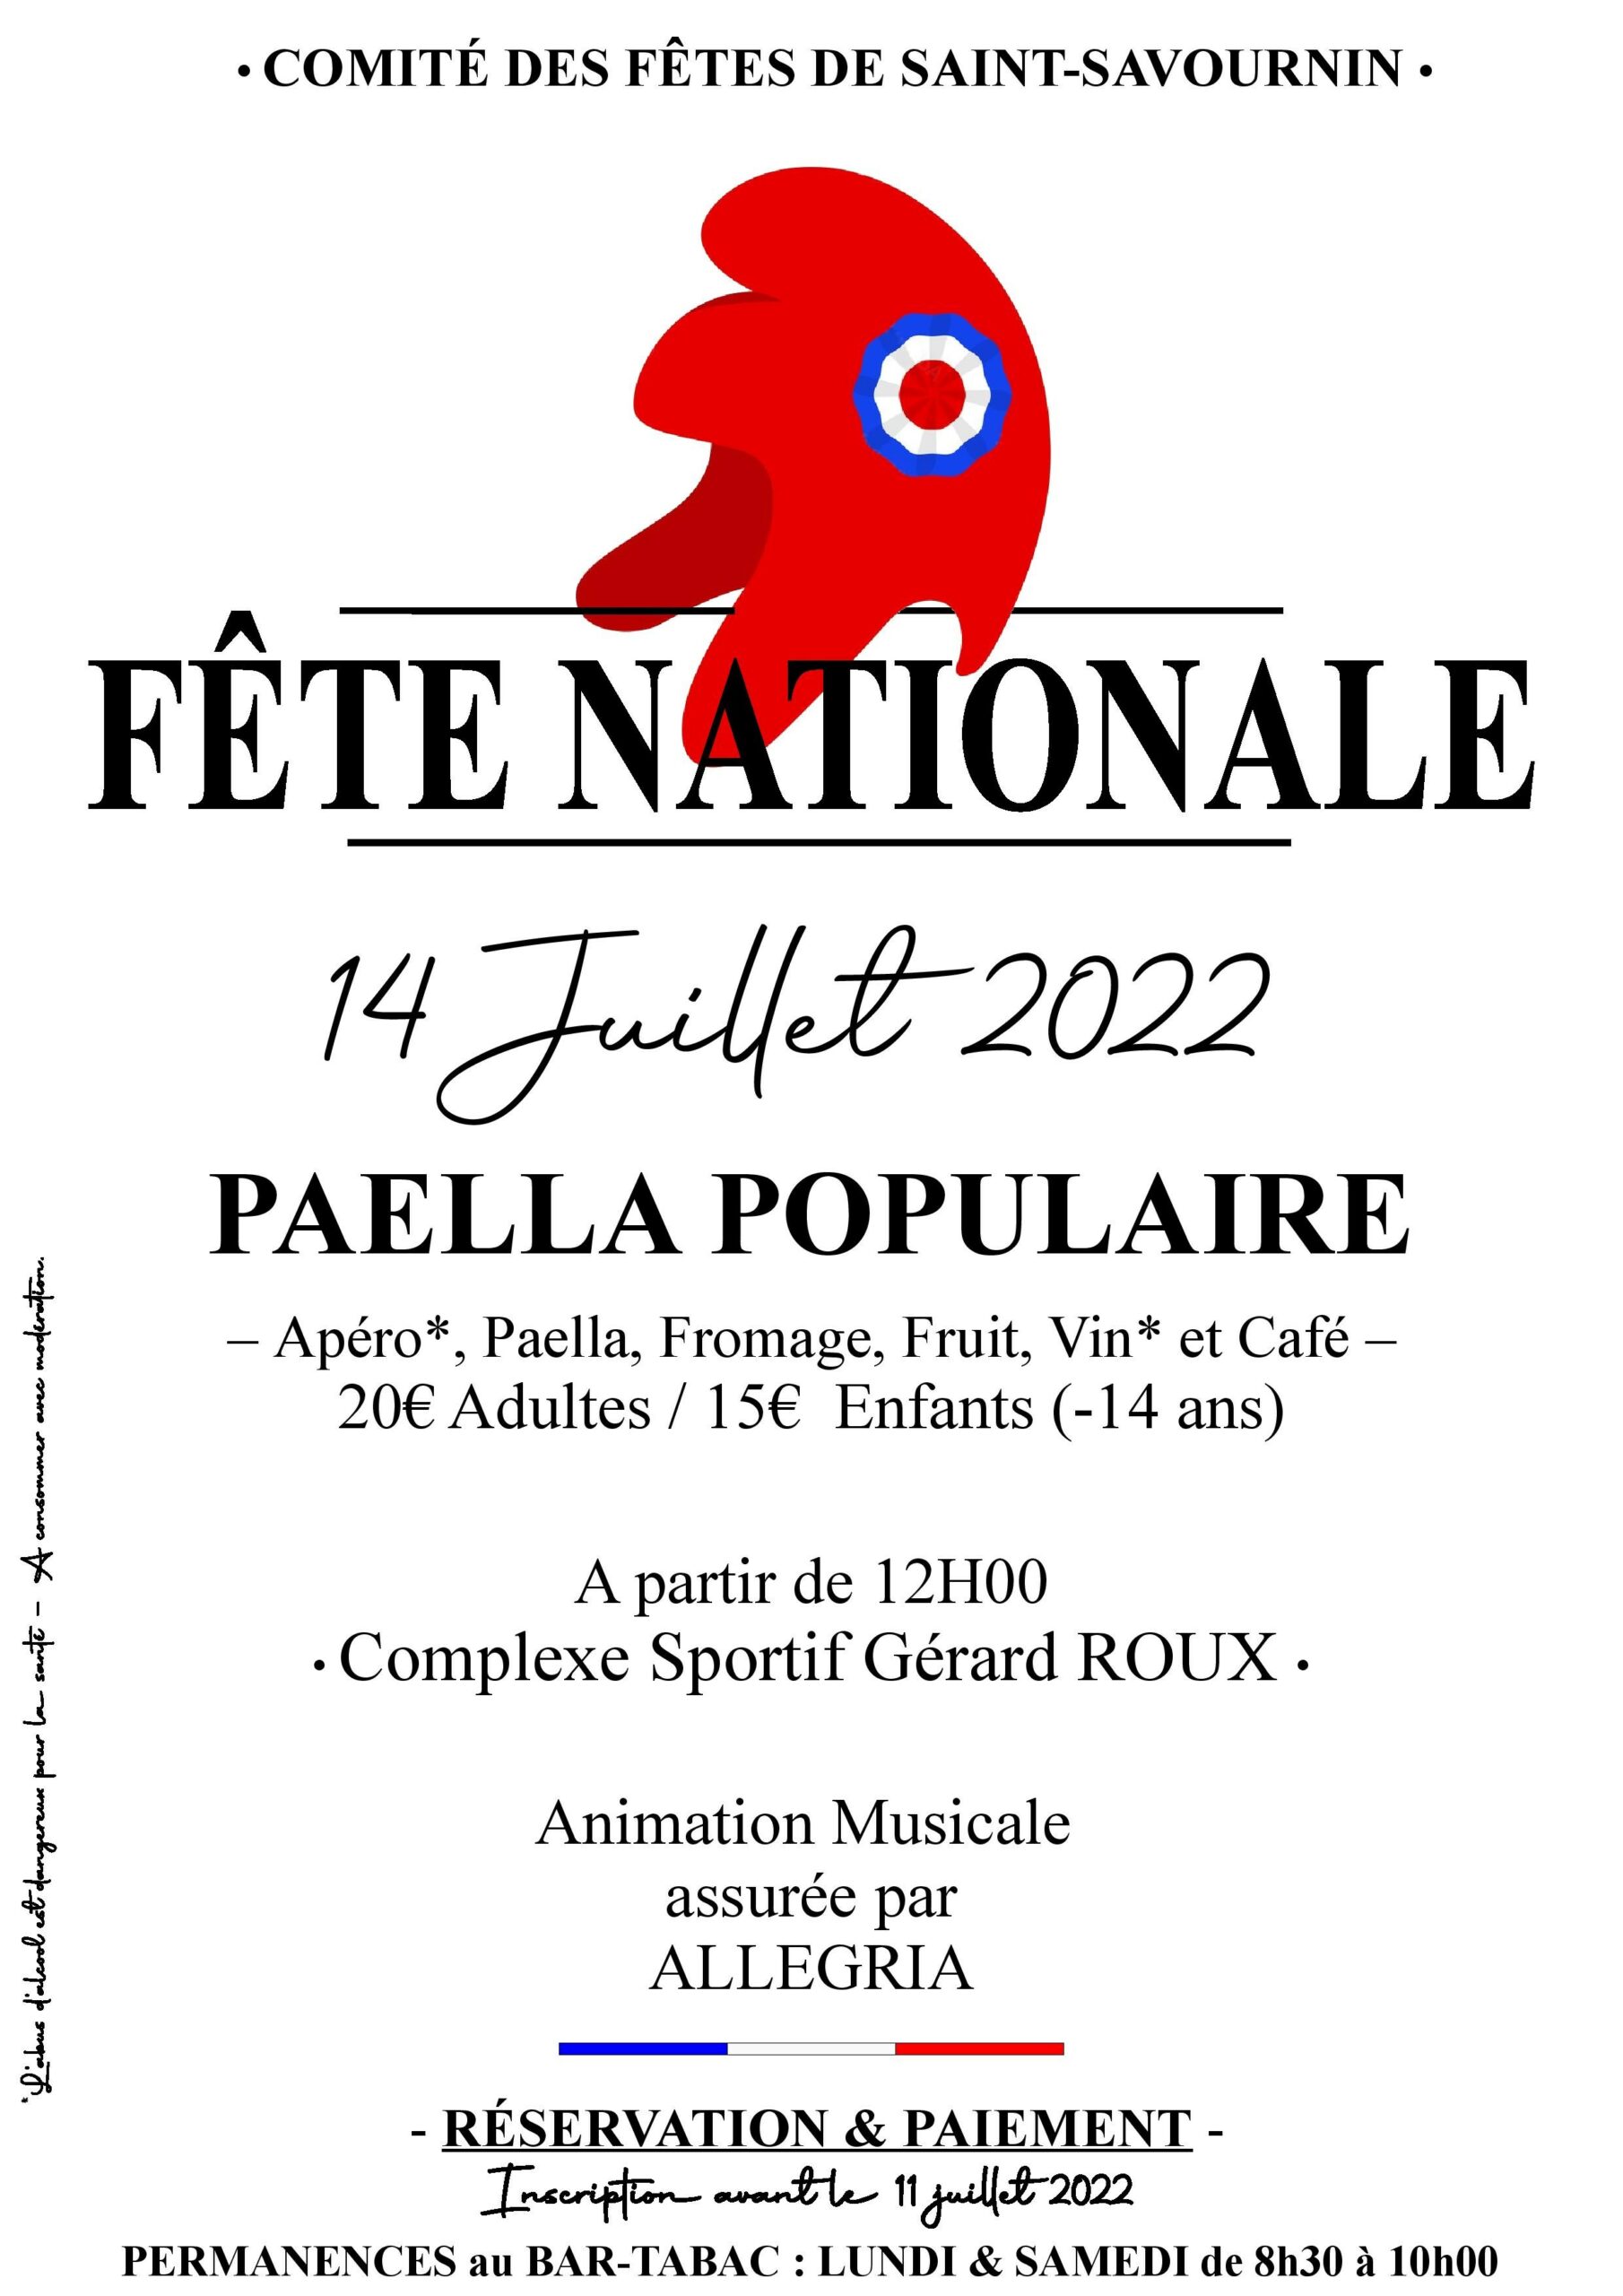 Mairie Saint-Savournin affiche 14 juillet 2022 paella populaire comite fetes